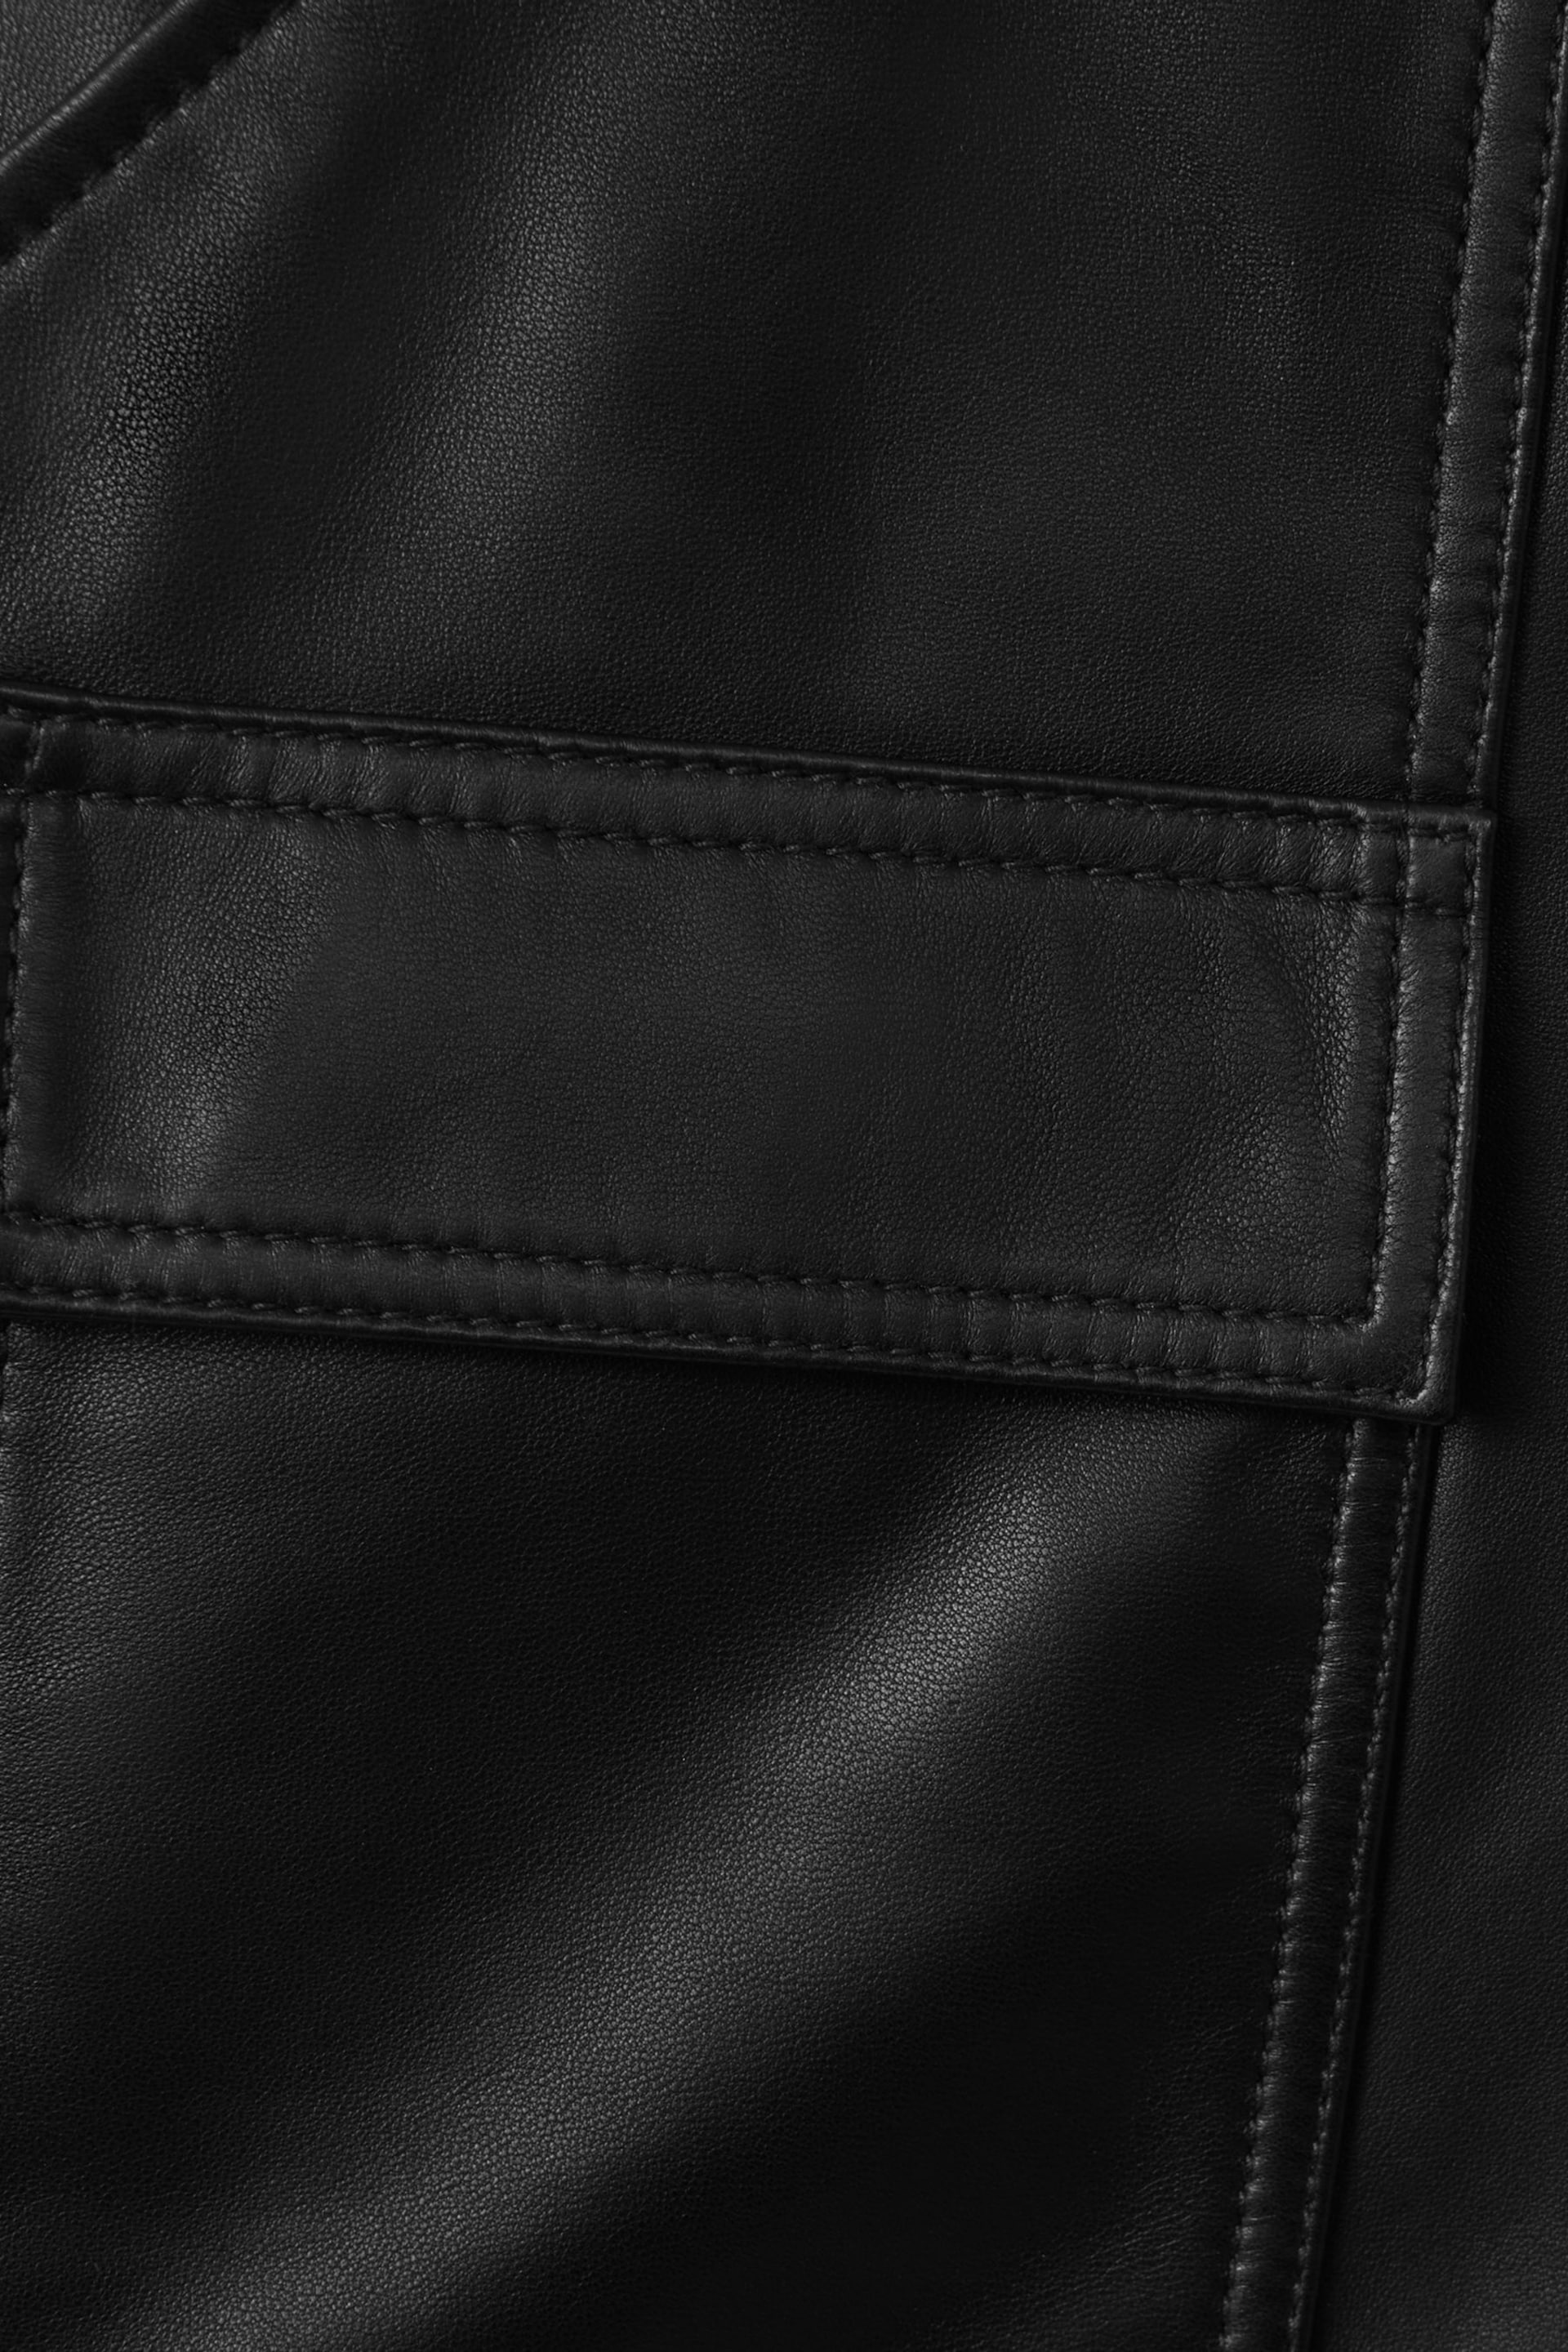 Atelier Leather Cargo Shorts - Image 7 of 7